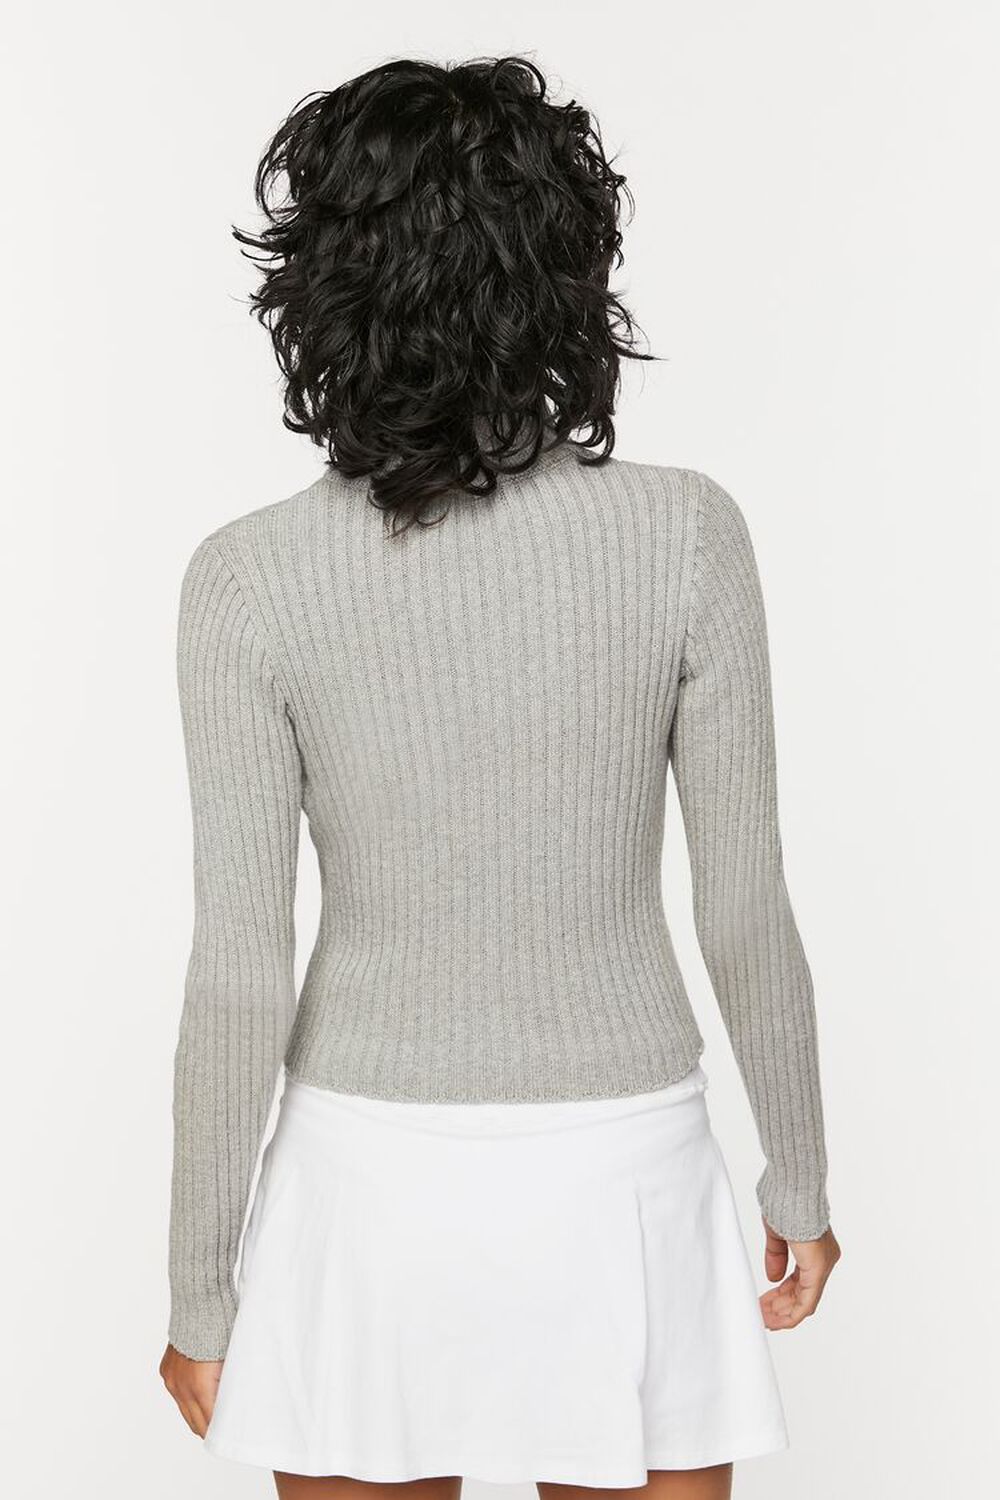 HEATHER GREY Half-Zip Funnel Neck Sweater, image 3